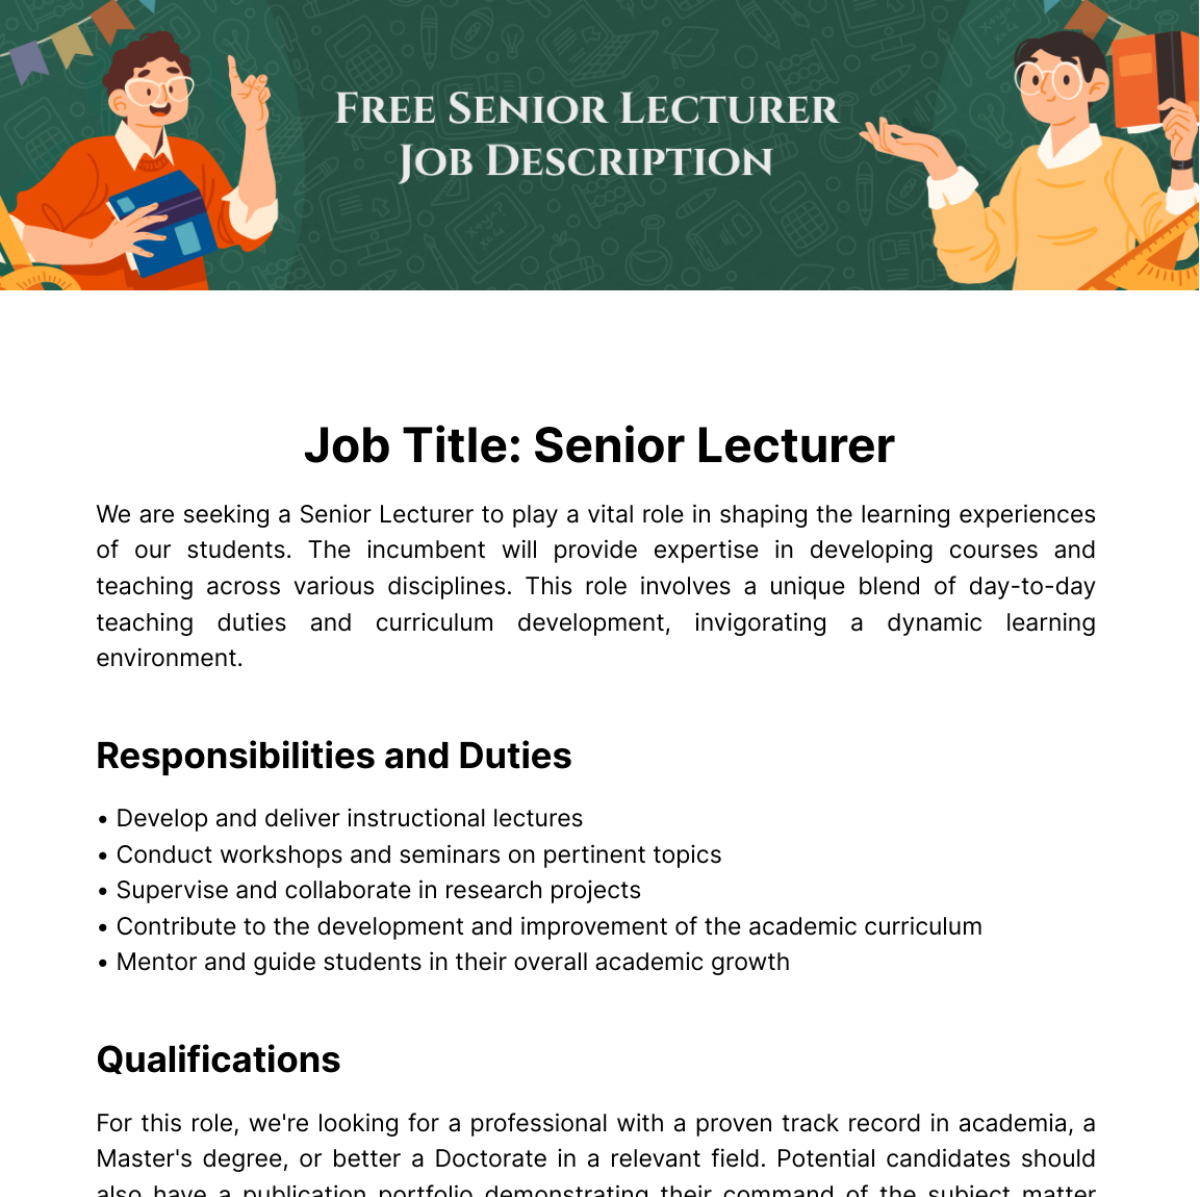 Free Senior Lecturer Job Description Template